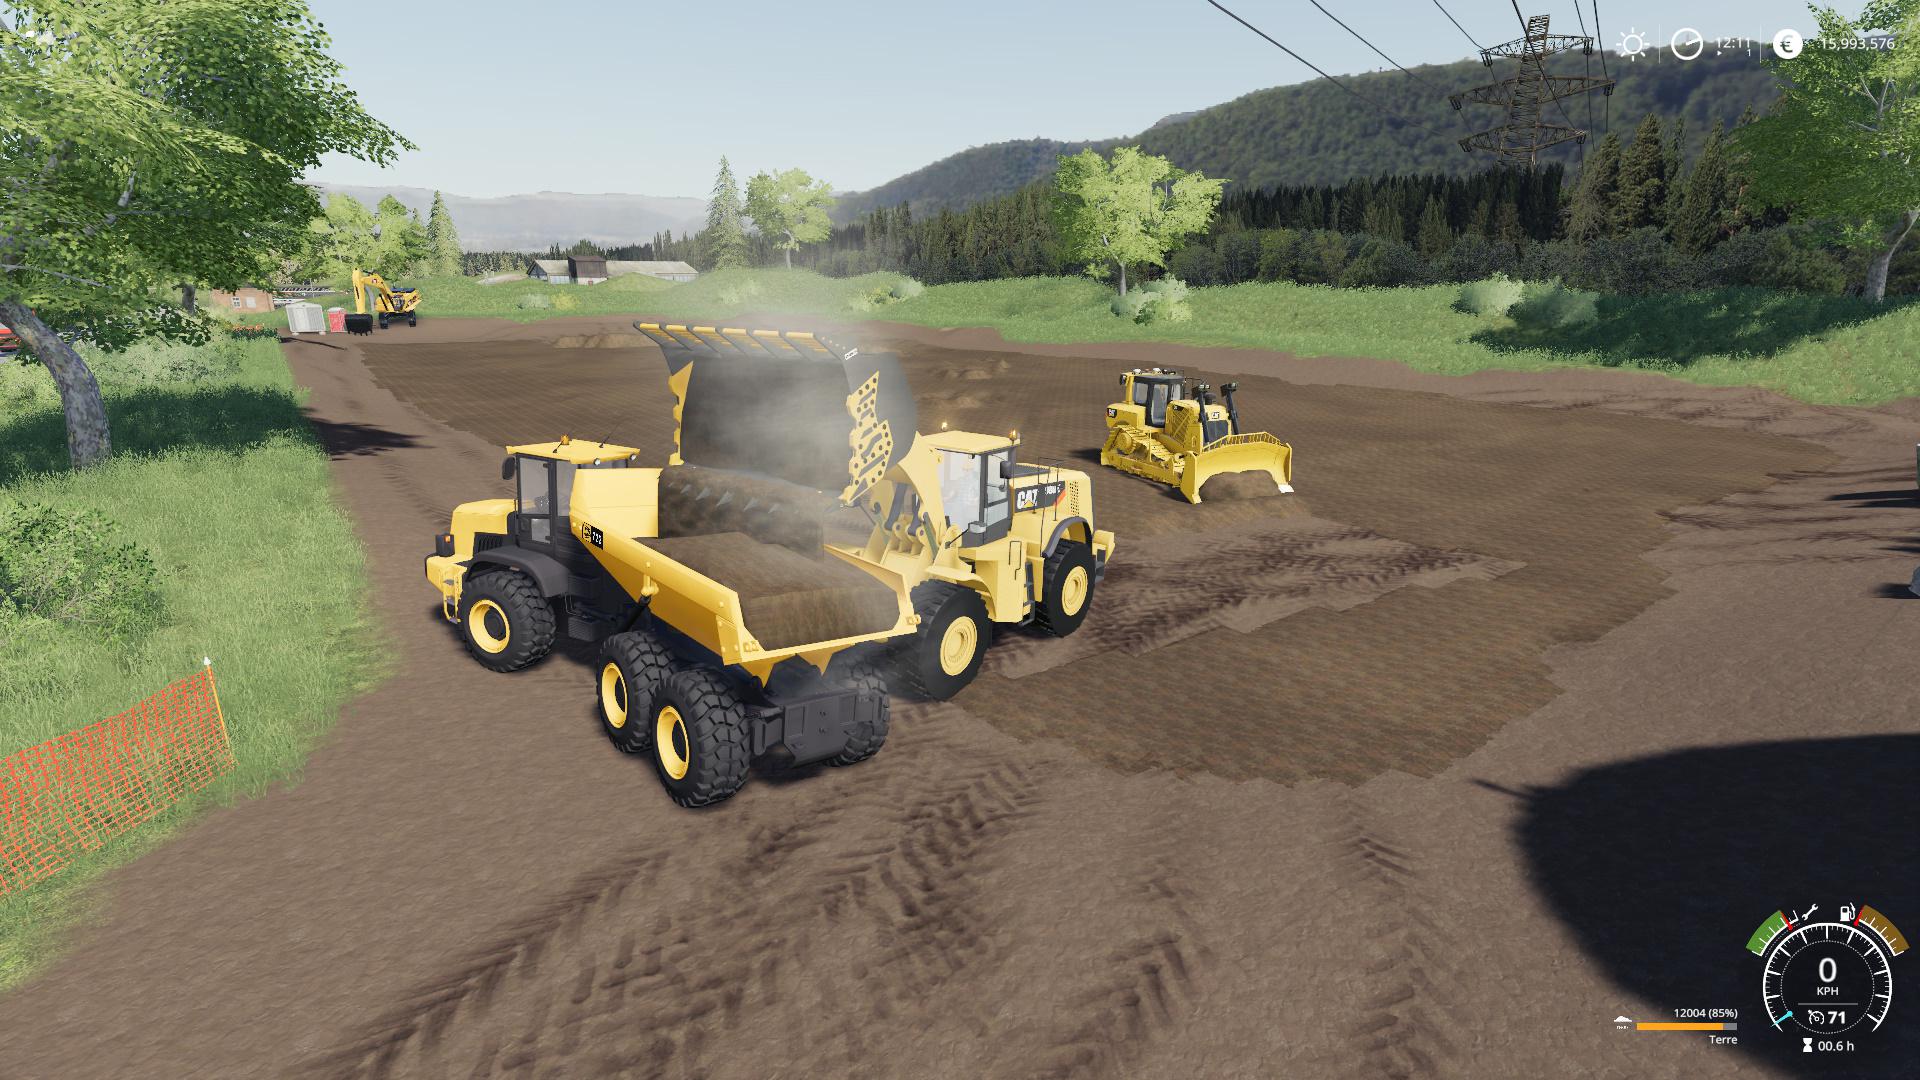 Fs19 Mining Bucket For 980k Cat Loader V10 Farming Simulator 19 Modsclub 2116